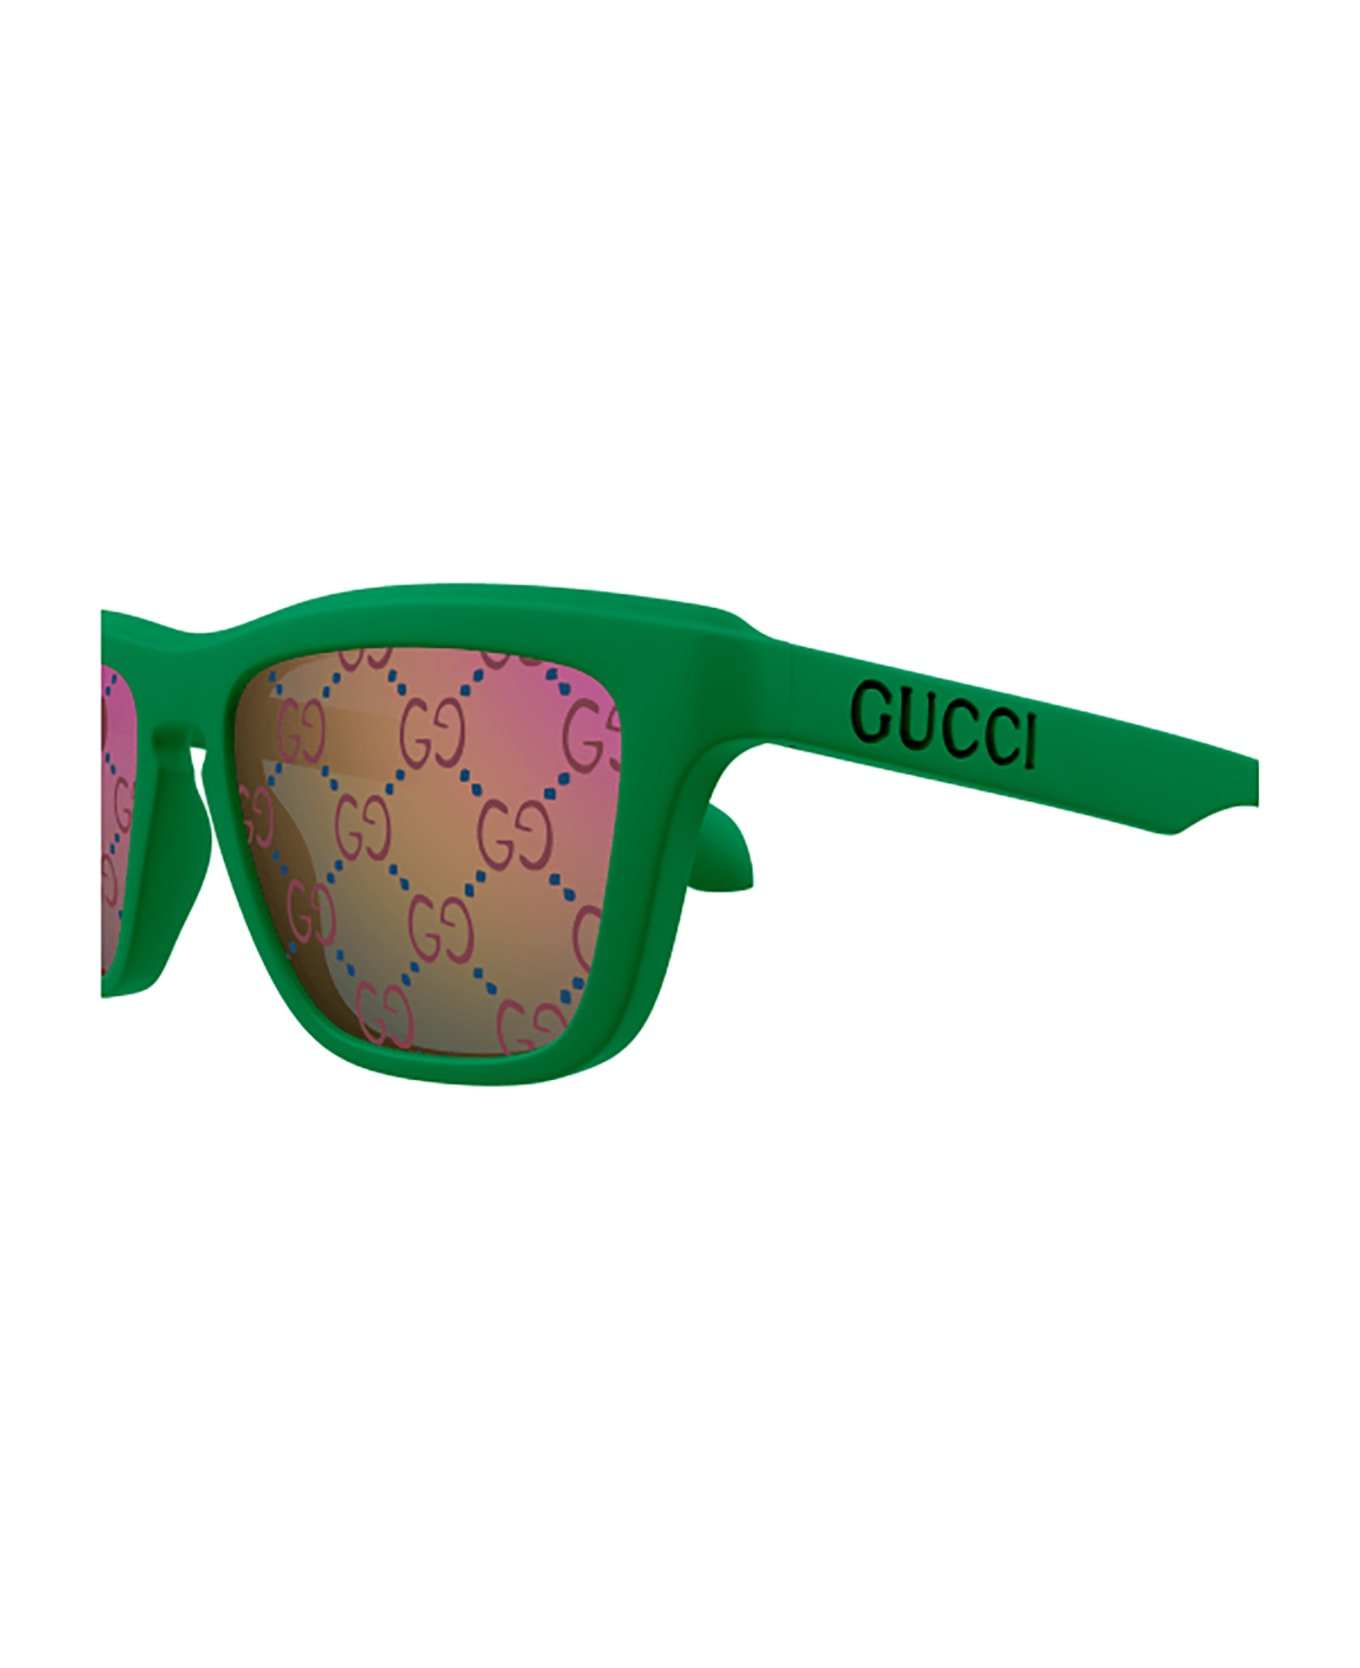 Gucci Eyewear GG1571S bellux Sunglasses - Green Green Blue